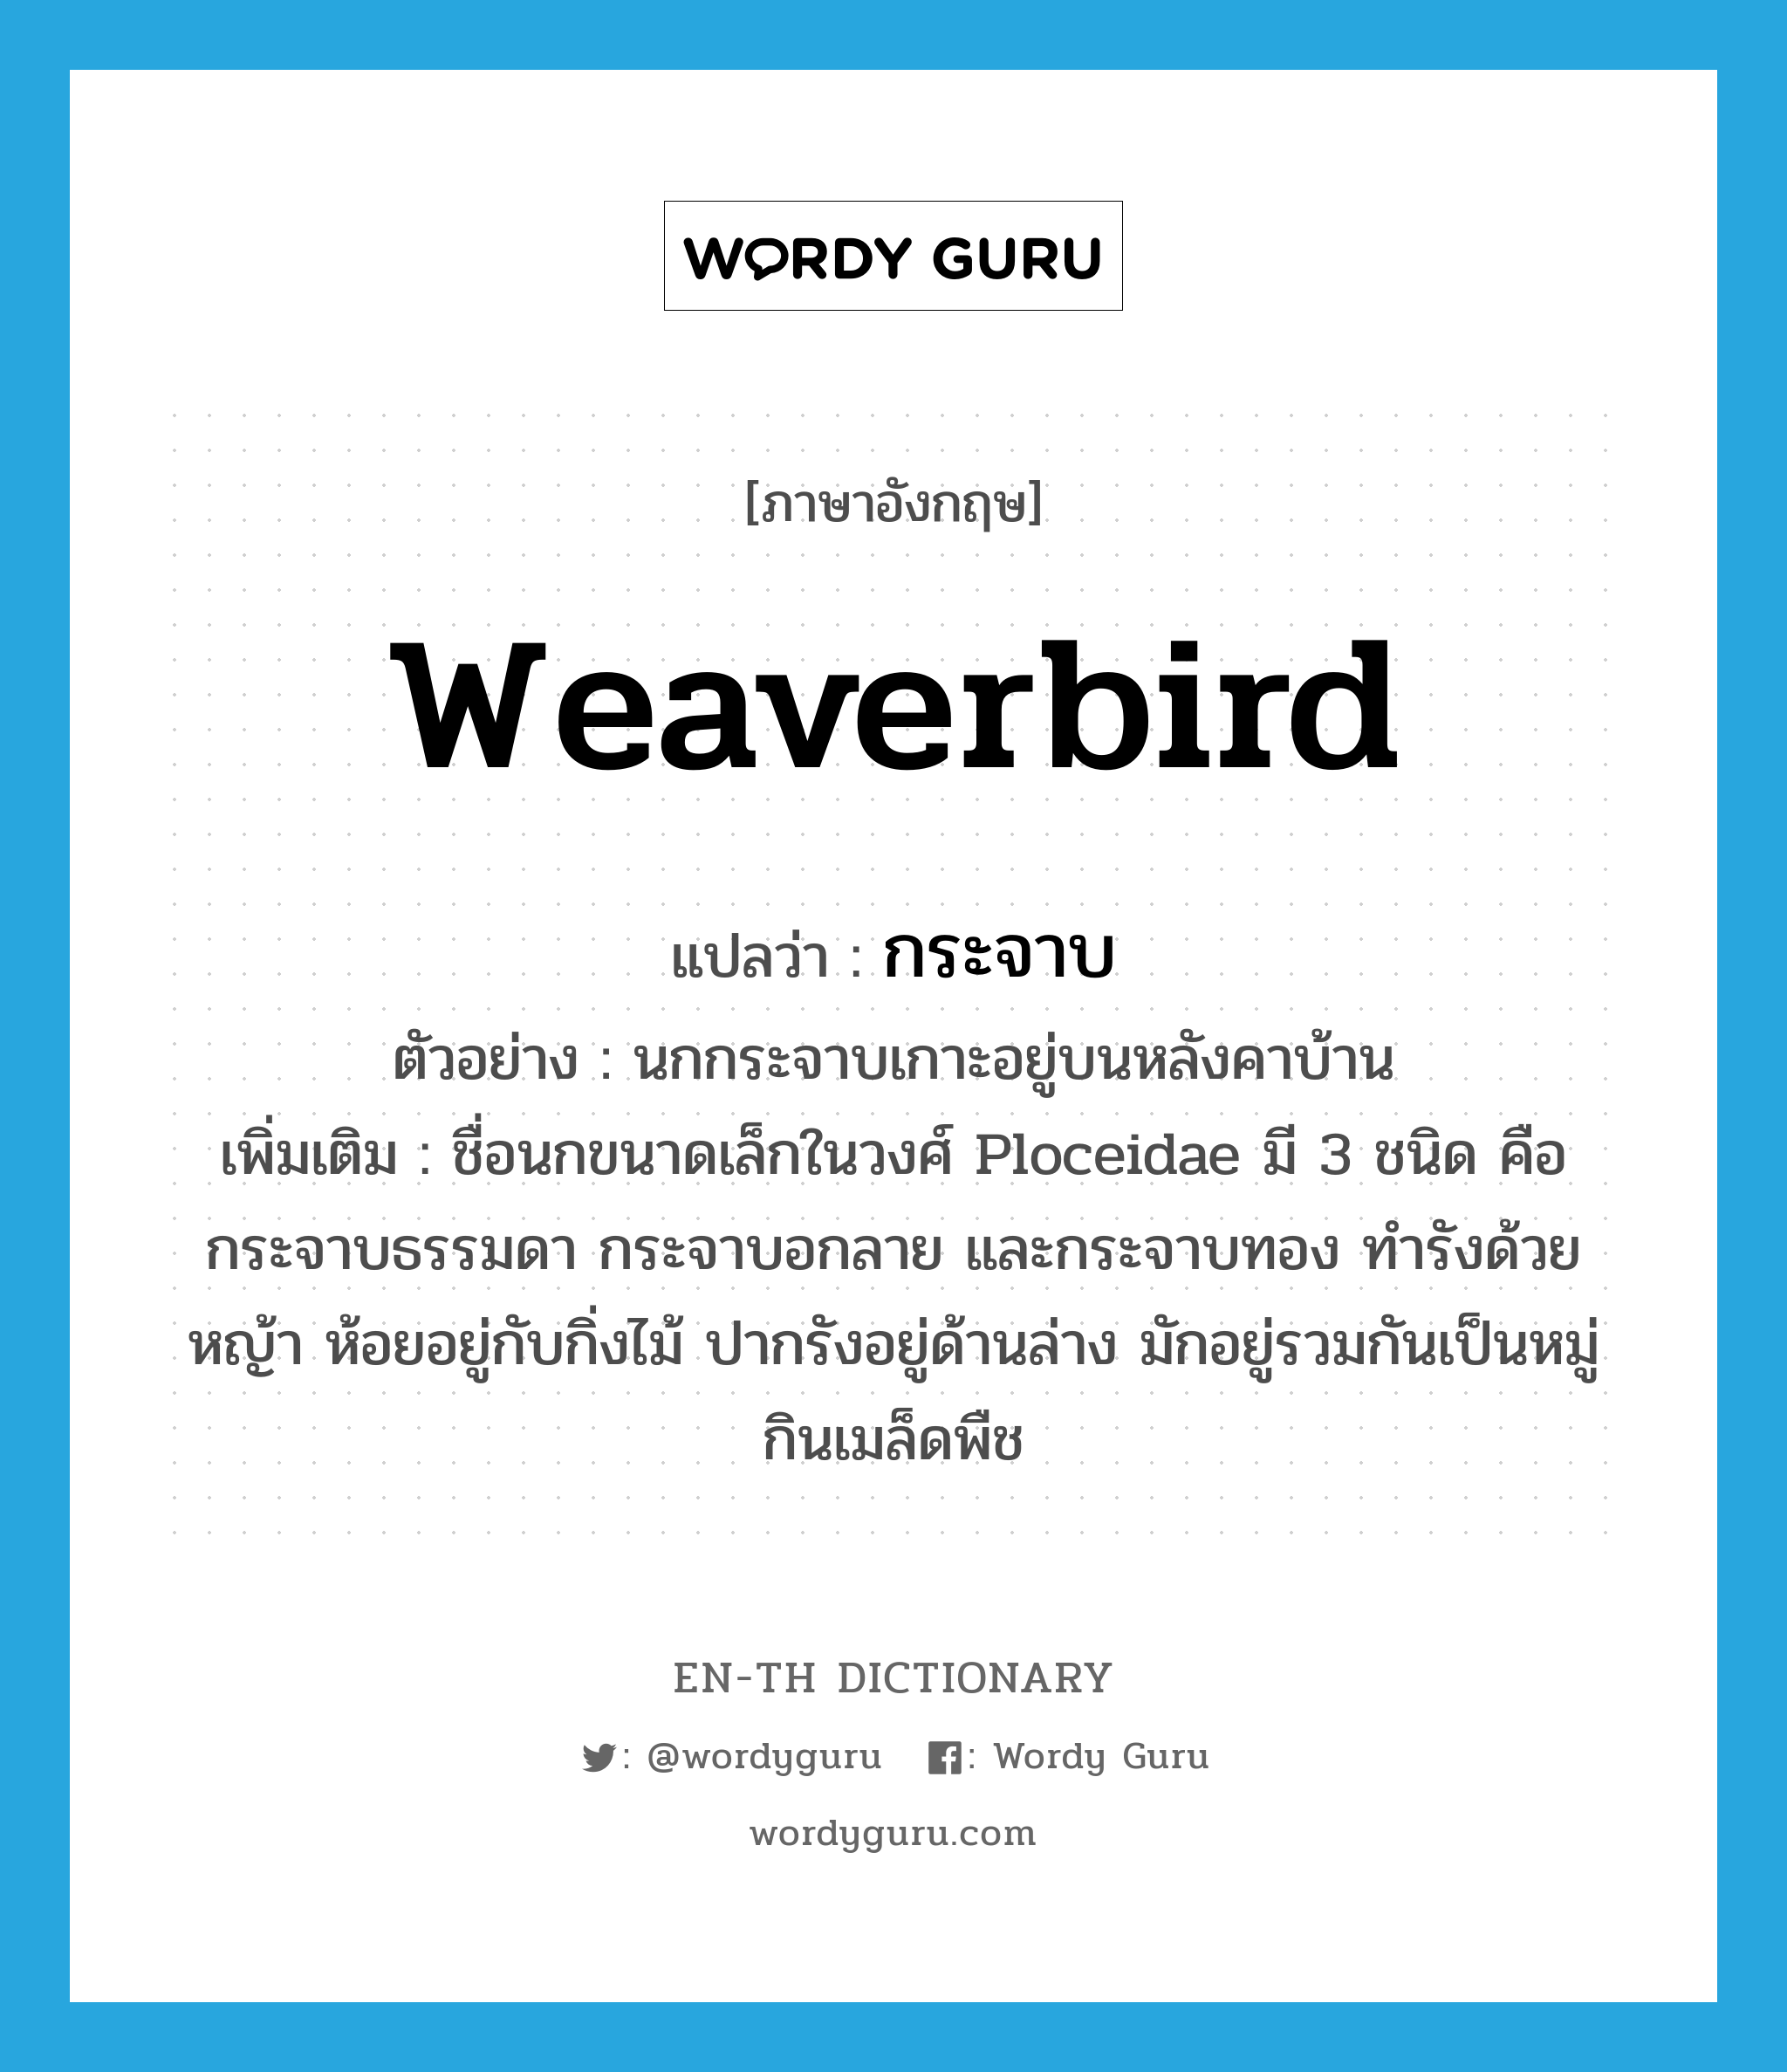 กระจาบ ภาษาอังกฤษ?, คำศัพท์ภาษาอังกฤษ กระจาบ แปลว่า weaverbird ประเภท N ตัวอย่าง นกกระจาบเกาะอยู่บนหลังคาบ้าน เพิ่มเติม ชื่อนกขนาดเล็กในวงศ์ Ploceidae มี 3 ชนิด คือ กระจาบธรรมดา กระจาบอกลาย และกระจาบทอง ทำรังด้วยหญ้า ห้อยอยู่กับกิ่งไม้ ปากรังอยู่ด้านล่าง มักอยู่รวมกันเป็นหมู่ กินเมล็ดพืช หมวด N